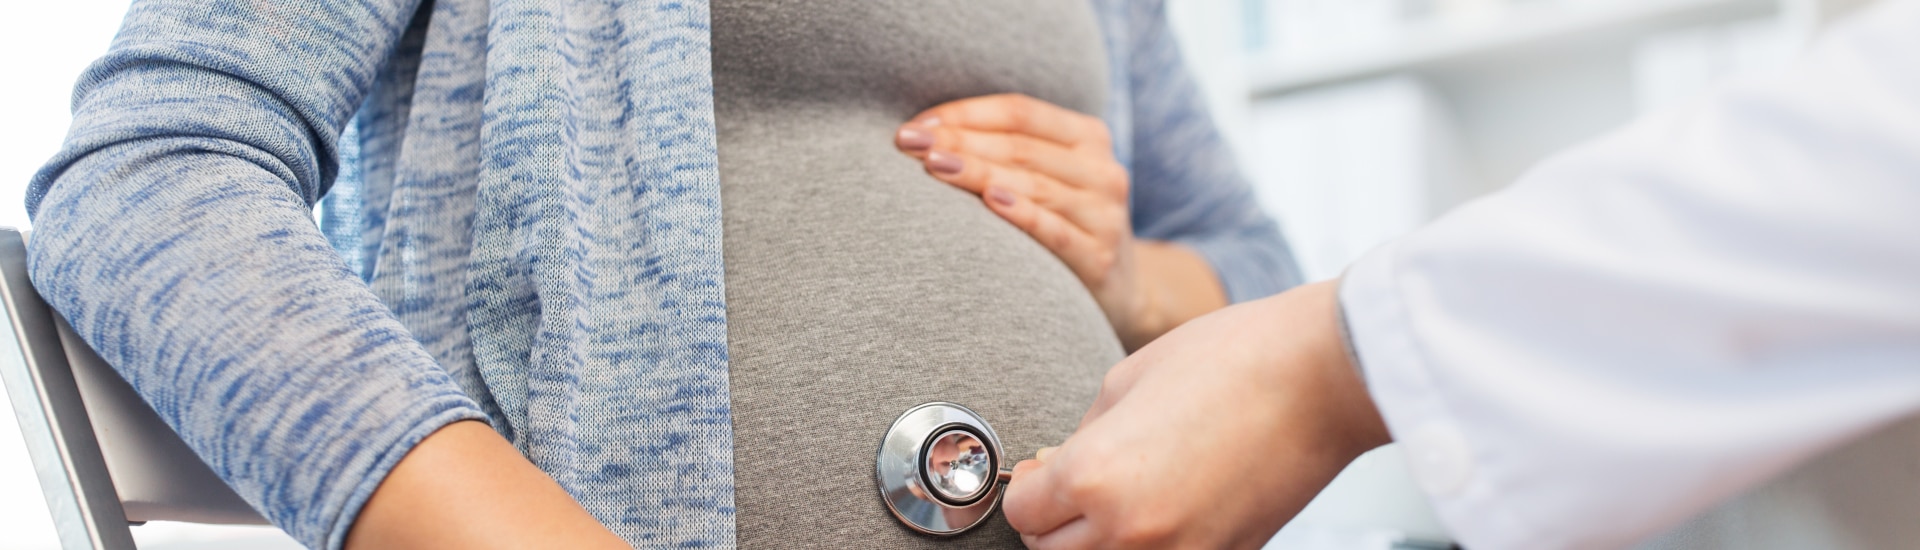 Georgia aprueba la prohibición del aborto si el feto tiene latidos cardíacos